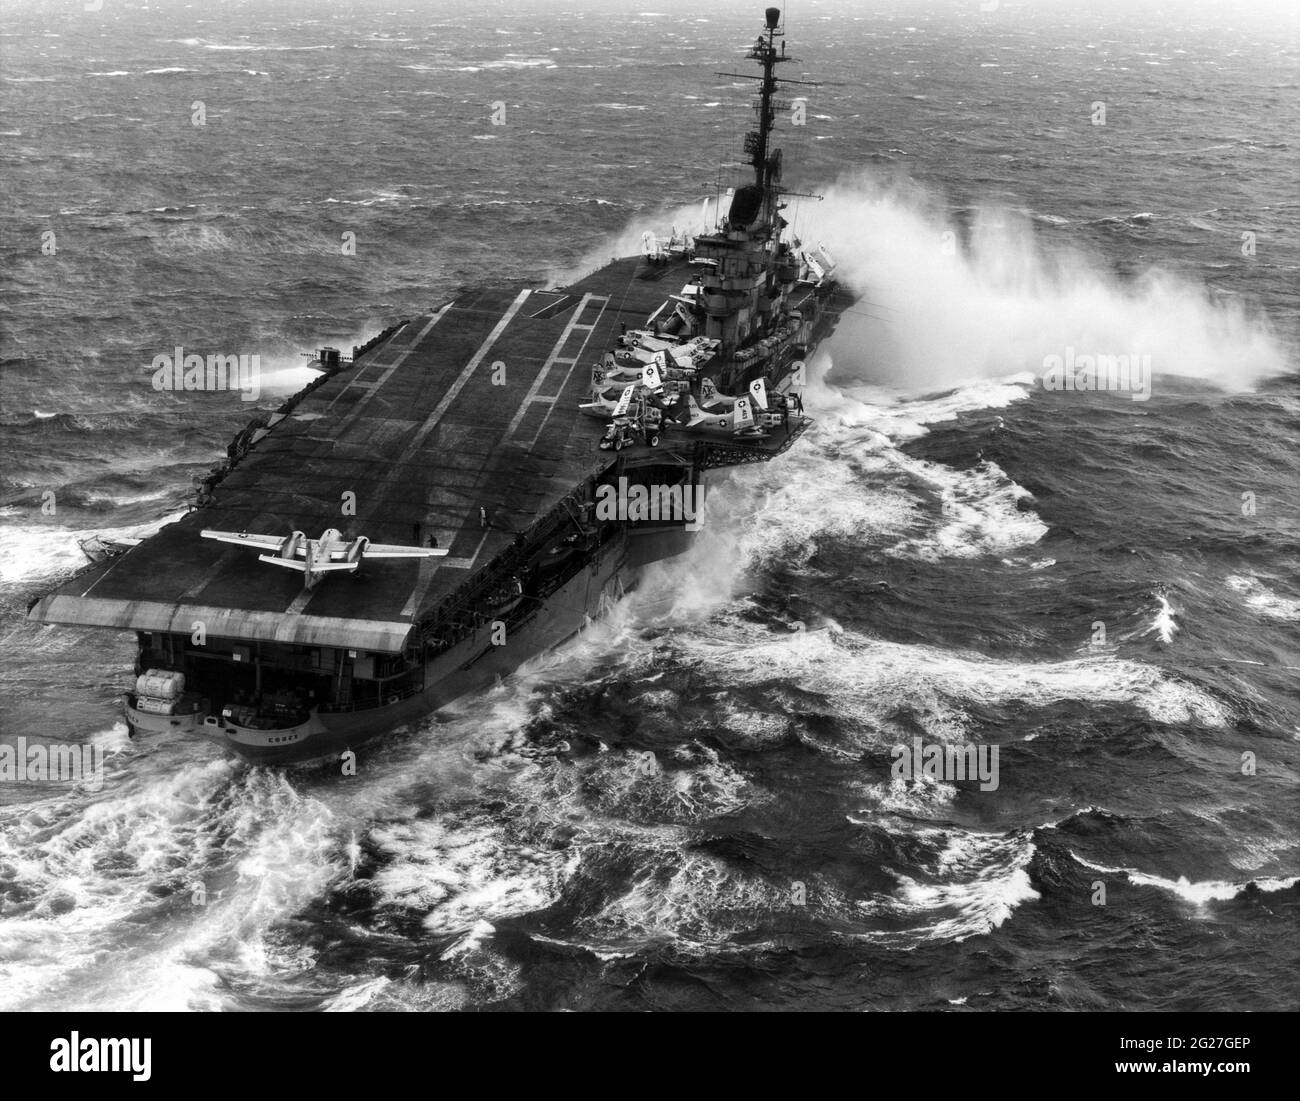 Flugzeugträger USS Essex (CVA-9), der in schwerer See Spray über den Bug sprüht. Stockfoto